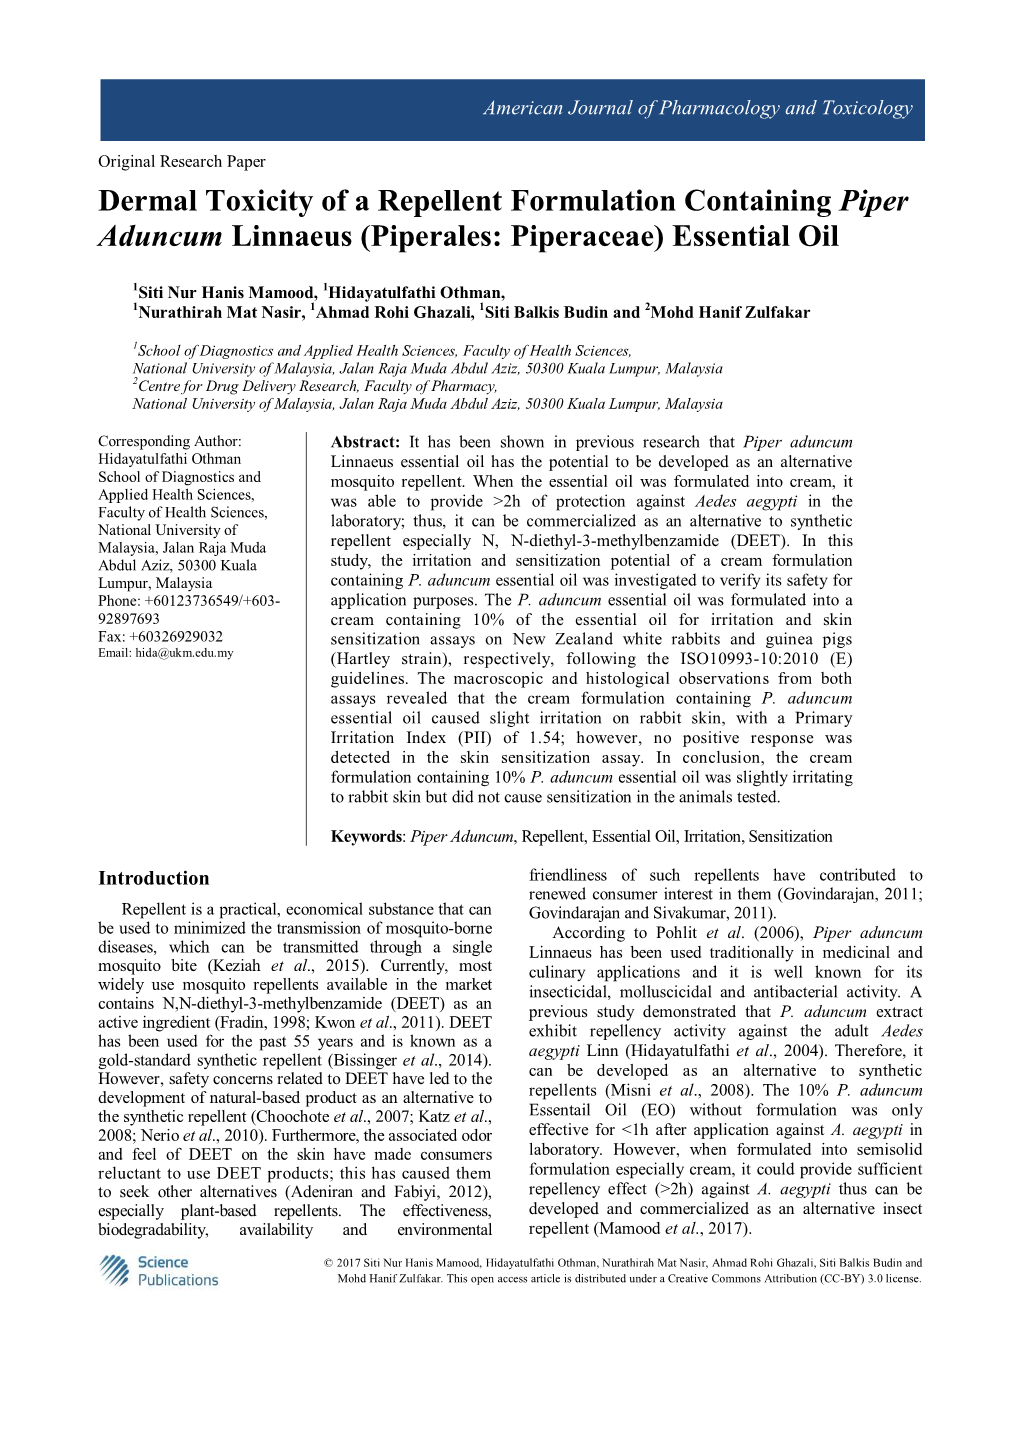 Dermal Toxicity of a Repellent Formulation Containing Piper Aduncum Linnaeus (Piperales: Piperaceae) Essential Oil